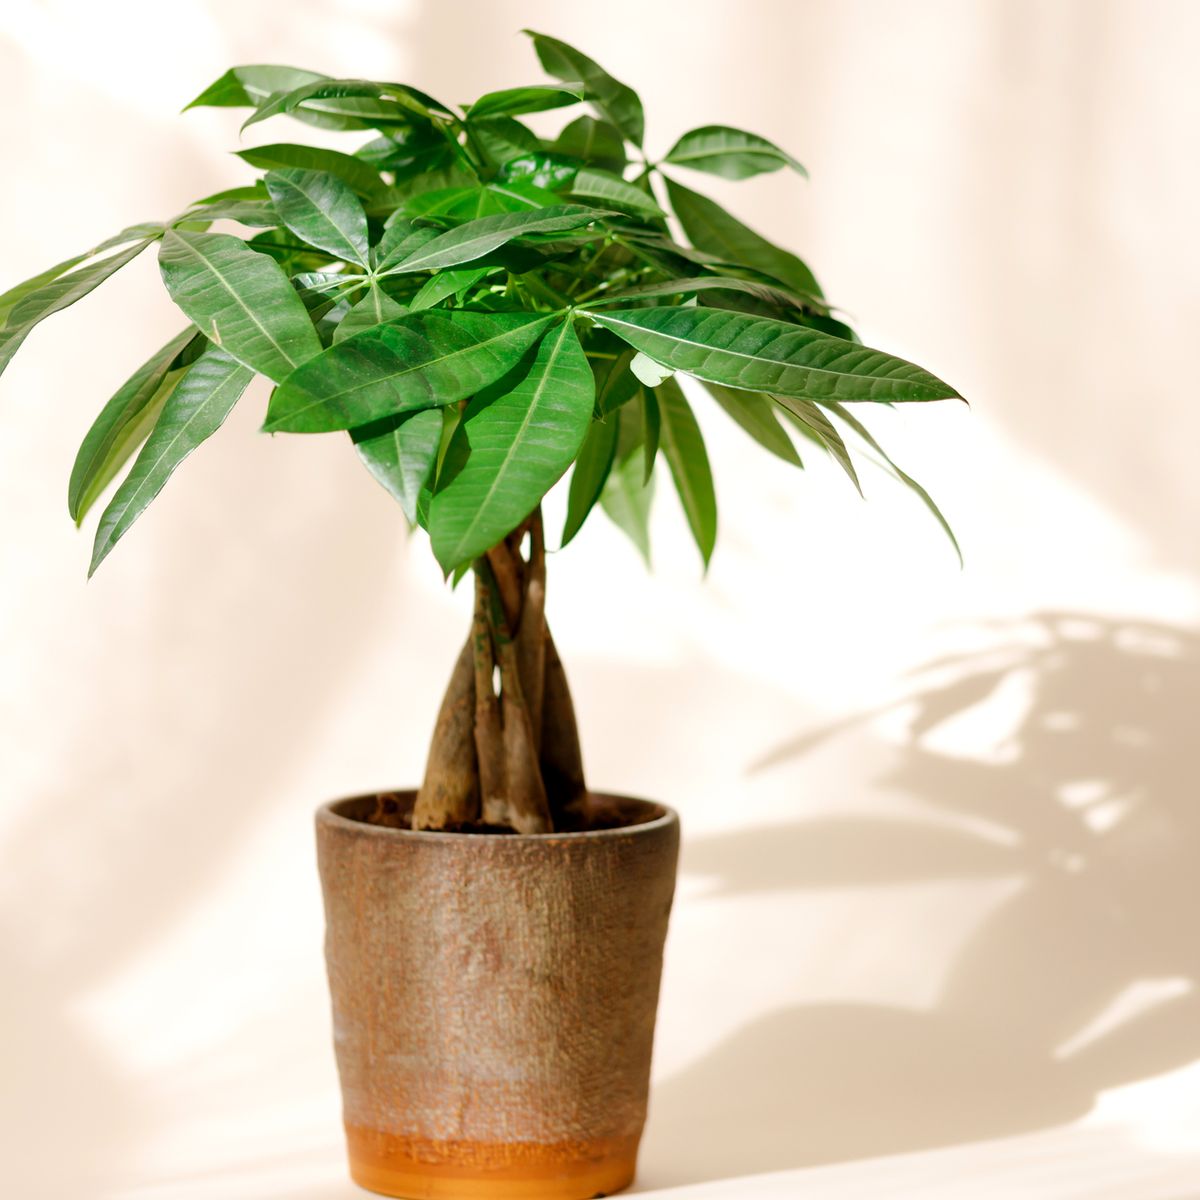 A young pachira bonsai in a brown pot